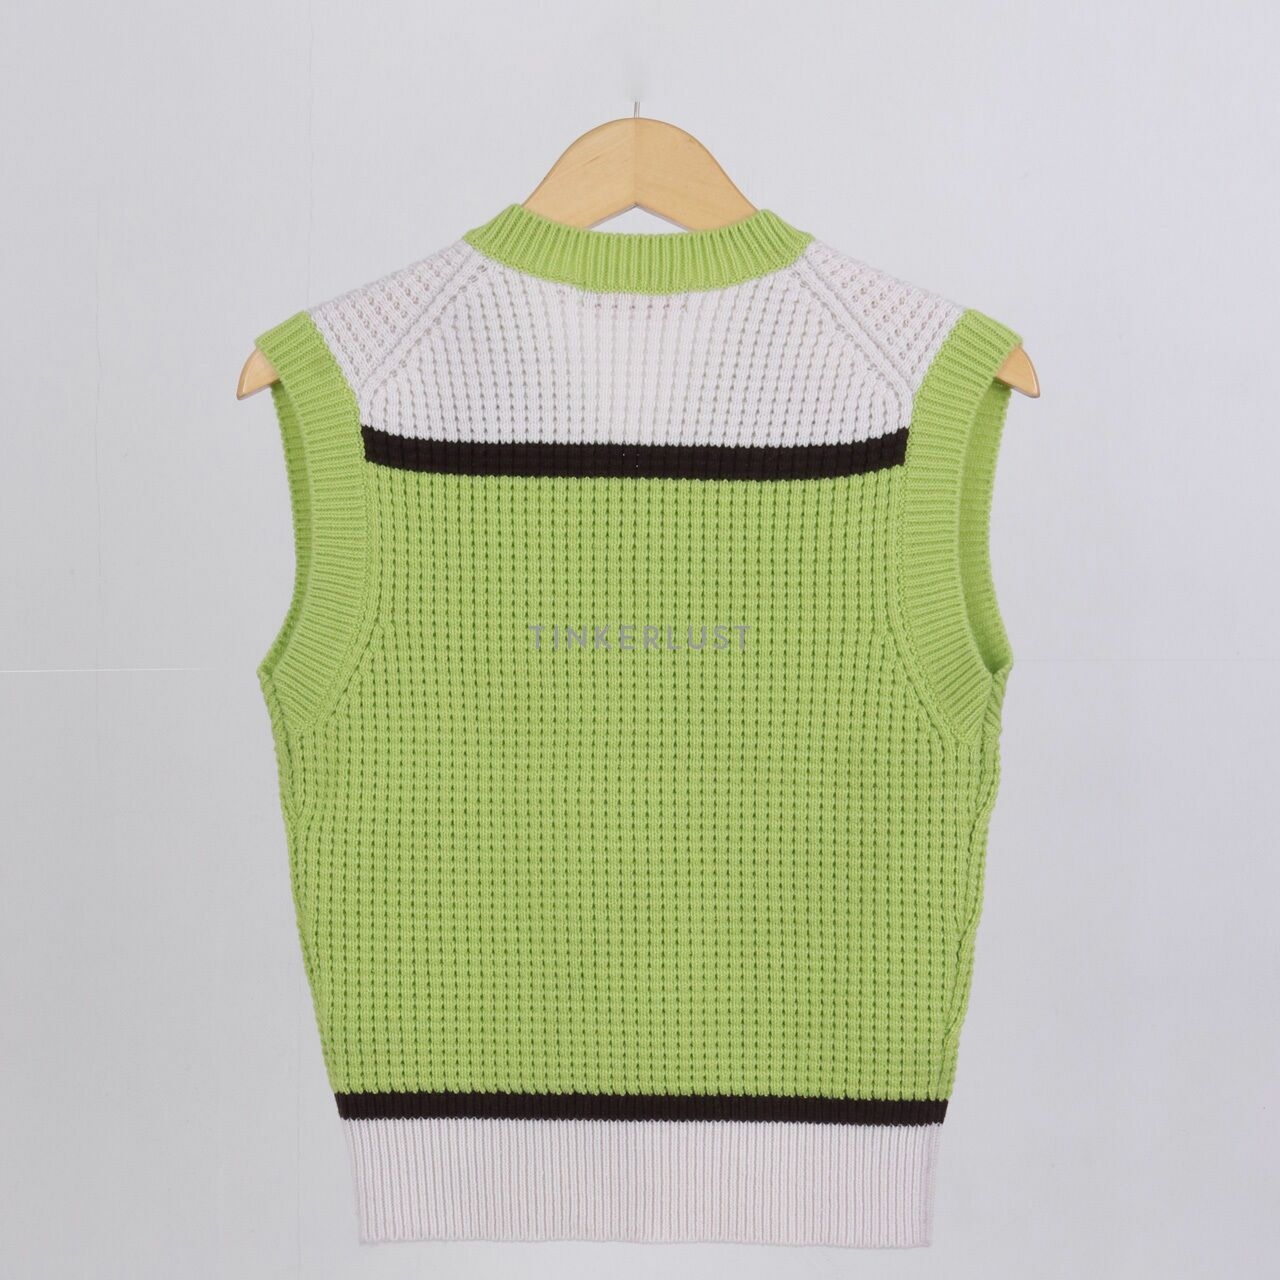 UNIQLO x MARNI Knitted V-Neck Green & White Vest